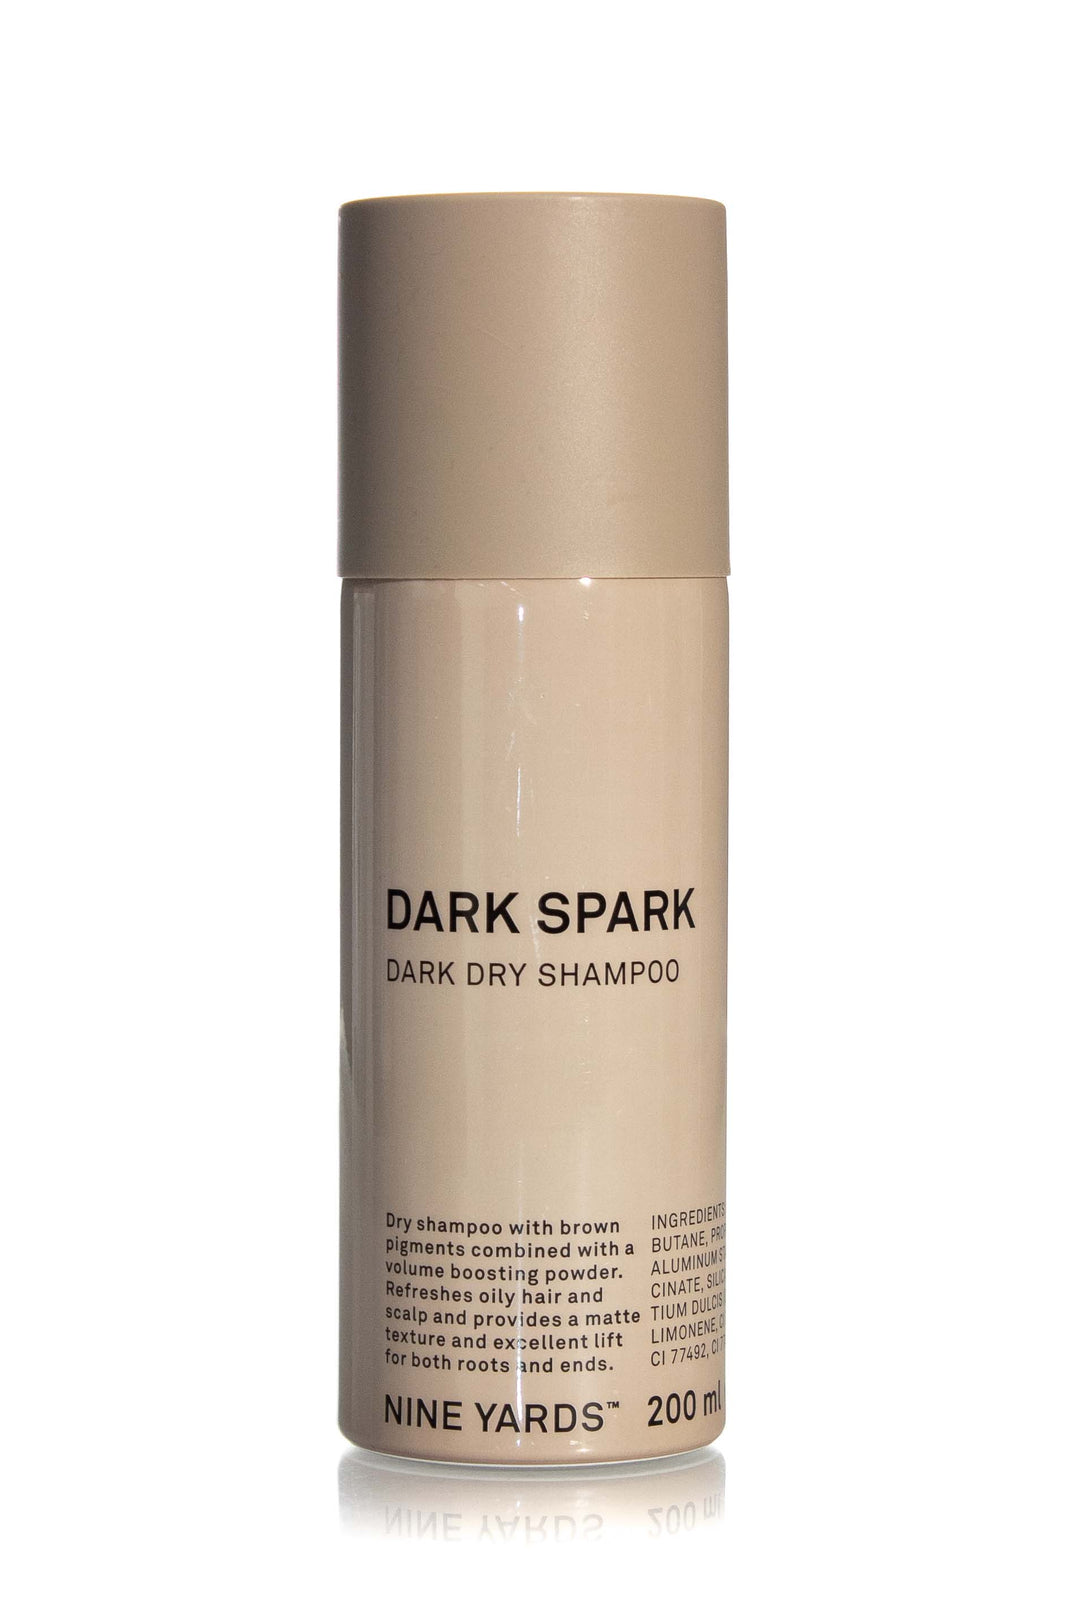 Nine Yards Dark Spark Dry Shampoo